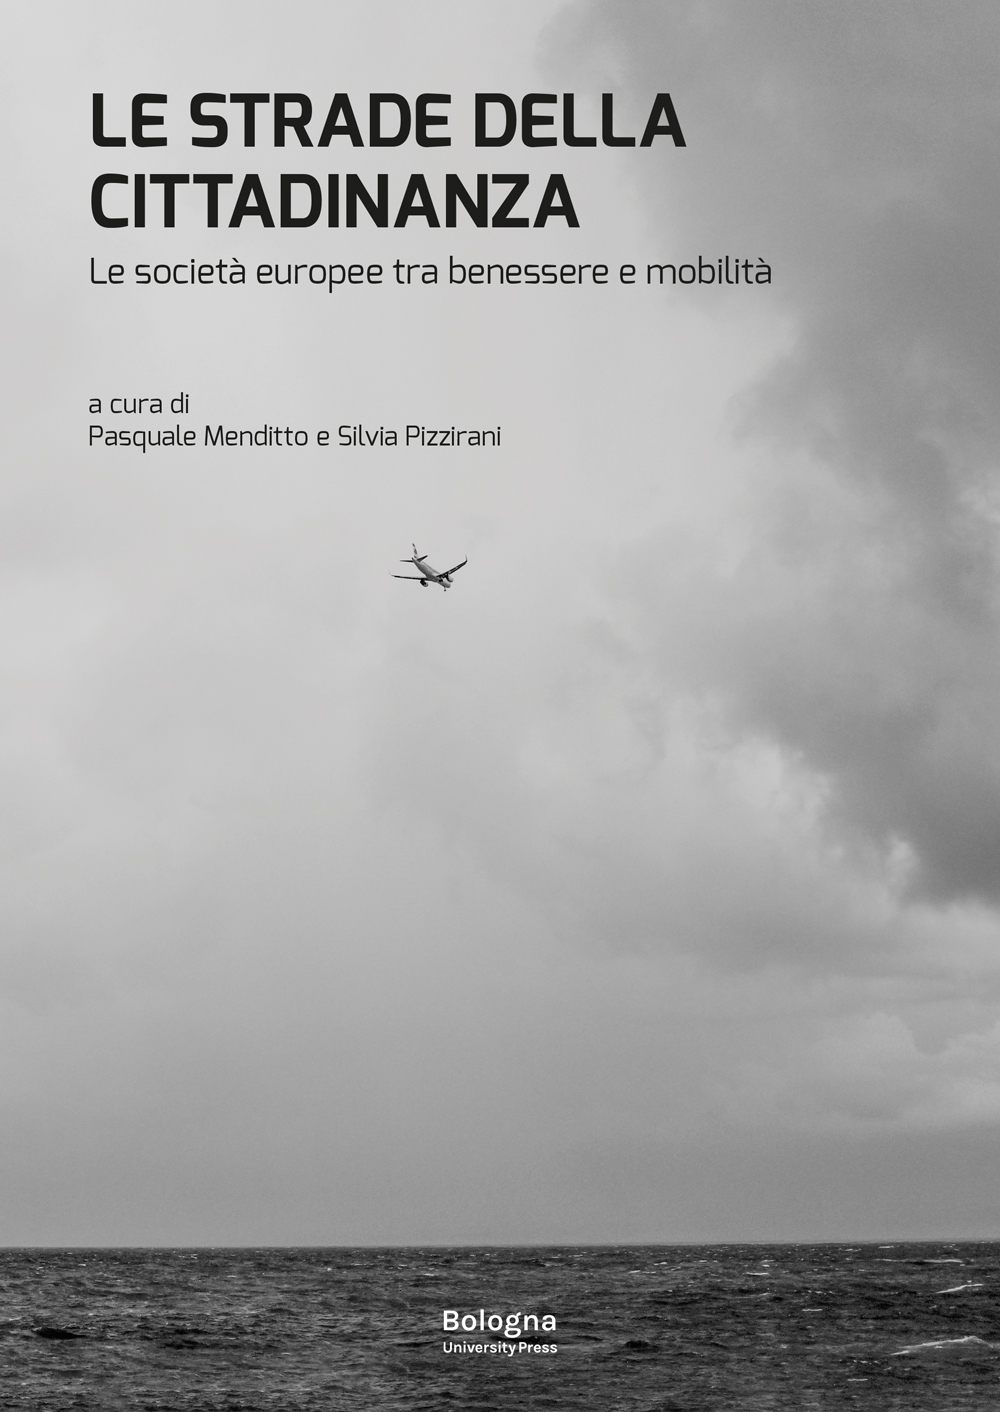 Le strade della cittadinanza - Bologna University Press